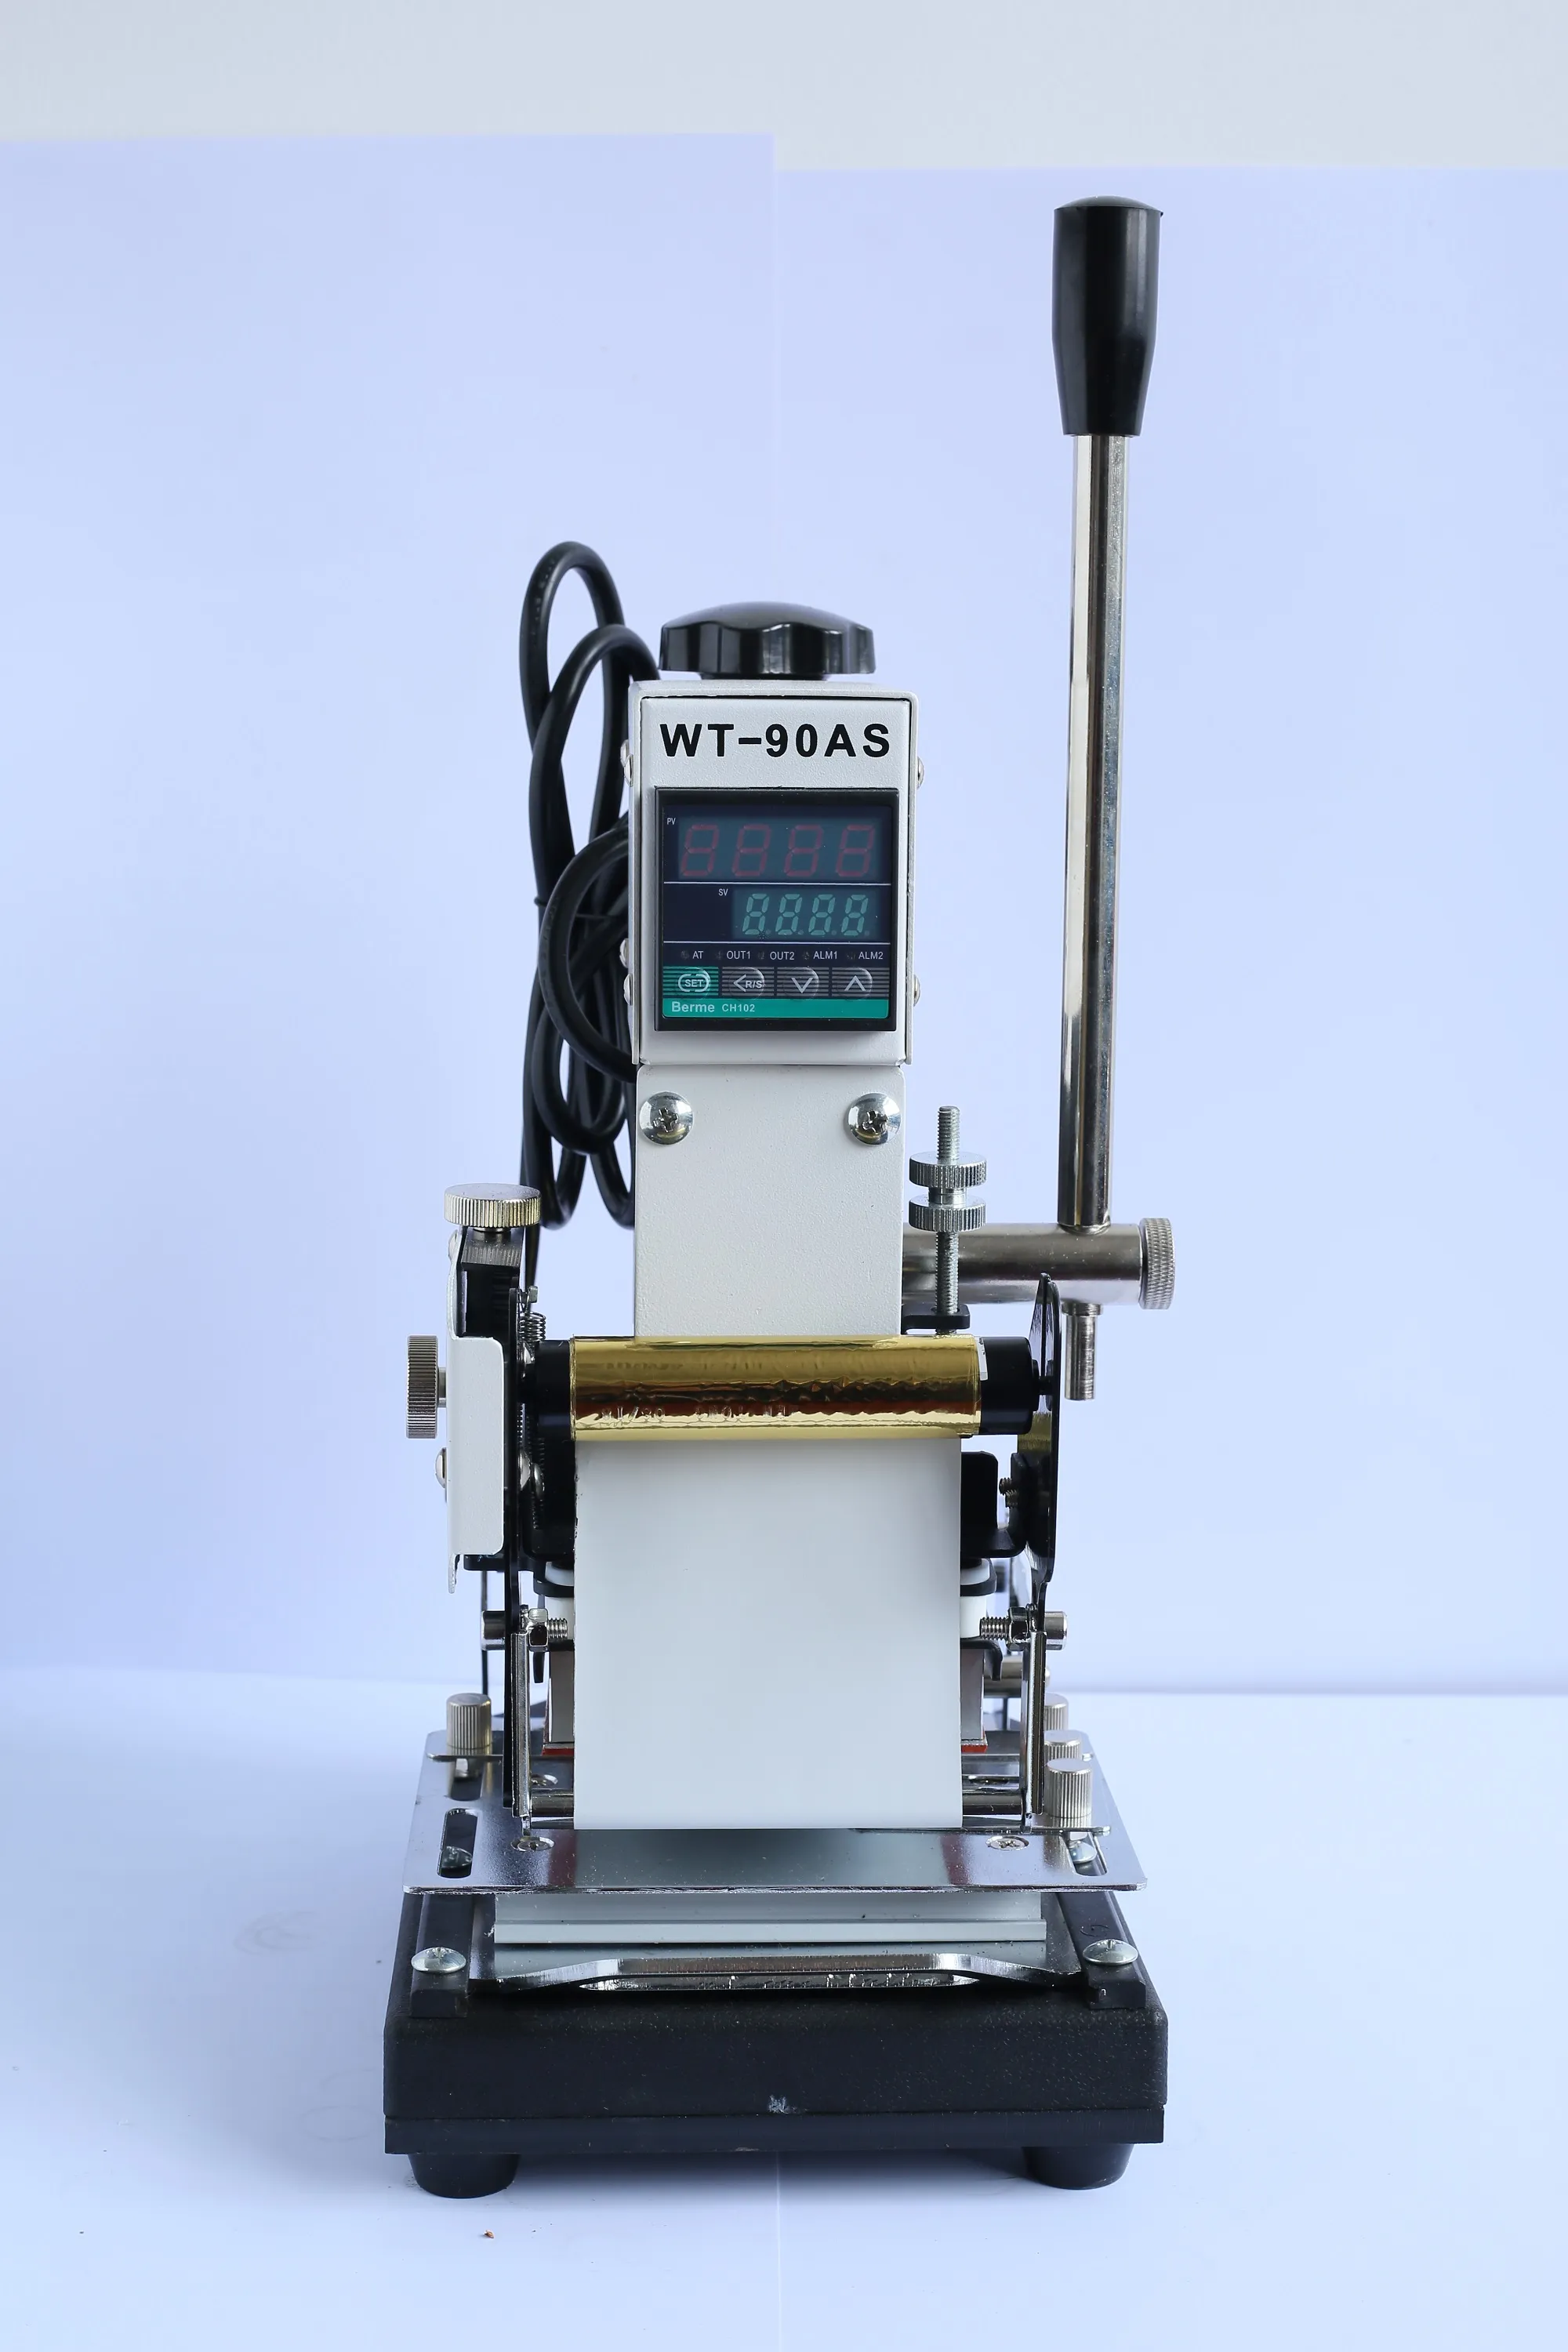 Neueste Heißprägemaschine für PVC-Karten-Mitgliederclub-Heißfolienpräge-Bronziermaschine WT-90AS